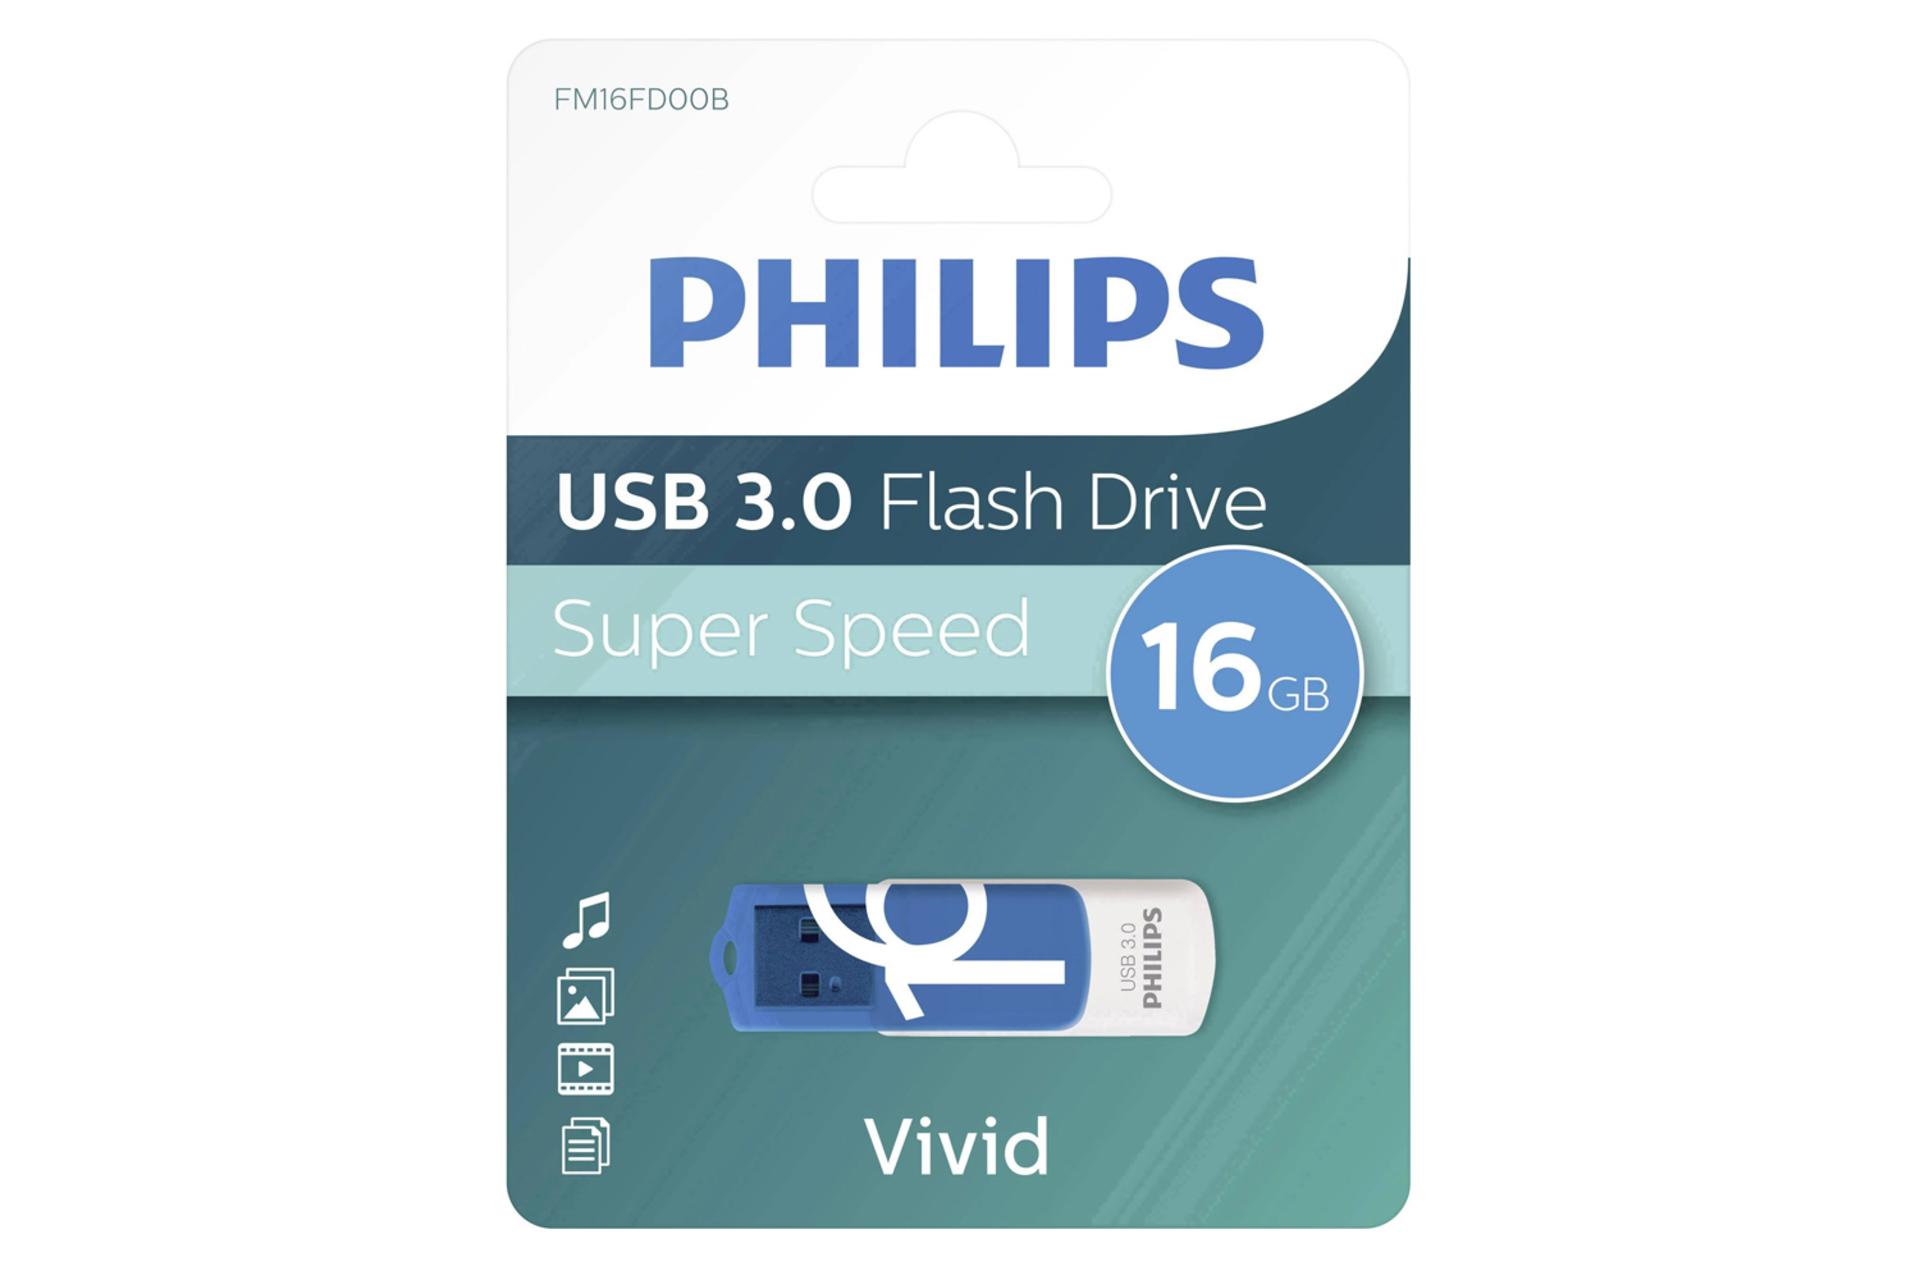 جعبه فلش مموری فیلیپس مدل Vivid FM16FD00B USB 3.0 ظرفیت 16 گیگابایت